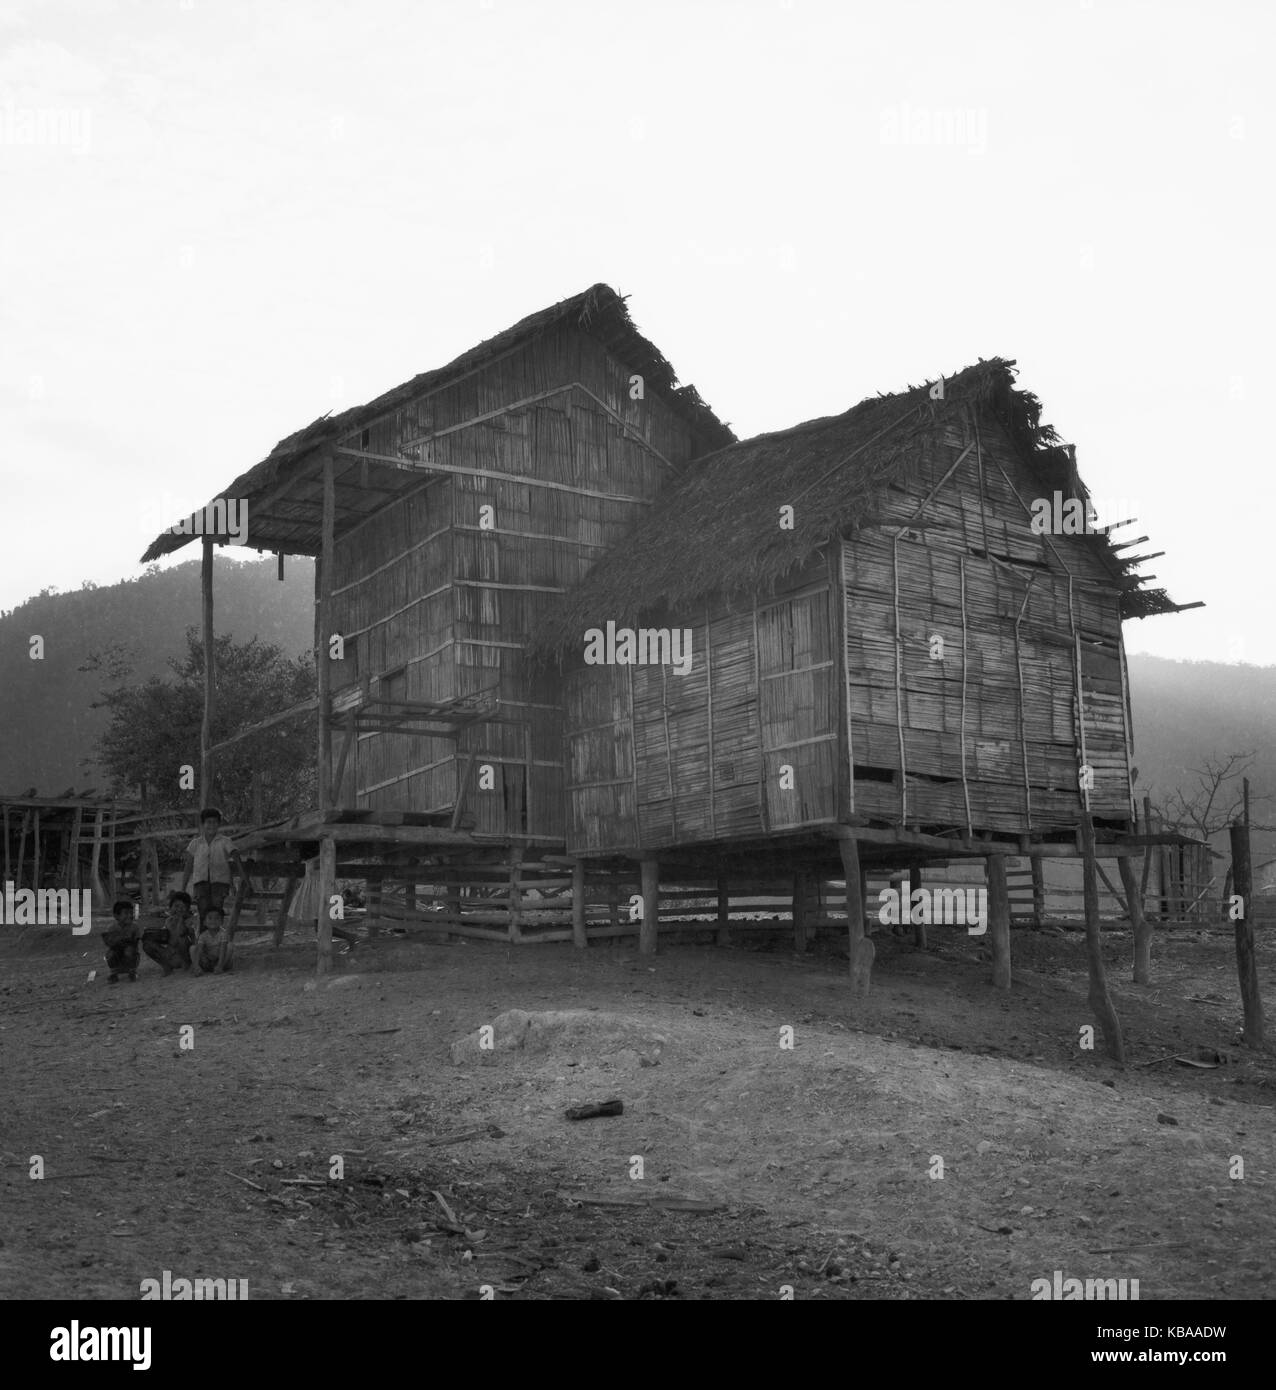 Pfahlbau am Rand der Stadt Ambato, Équateur 1960 er Jahre. Travaux de pieux de maisons dans une banlieue d'Ambato, Équateur 1960. Banque D'Images